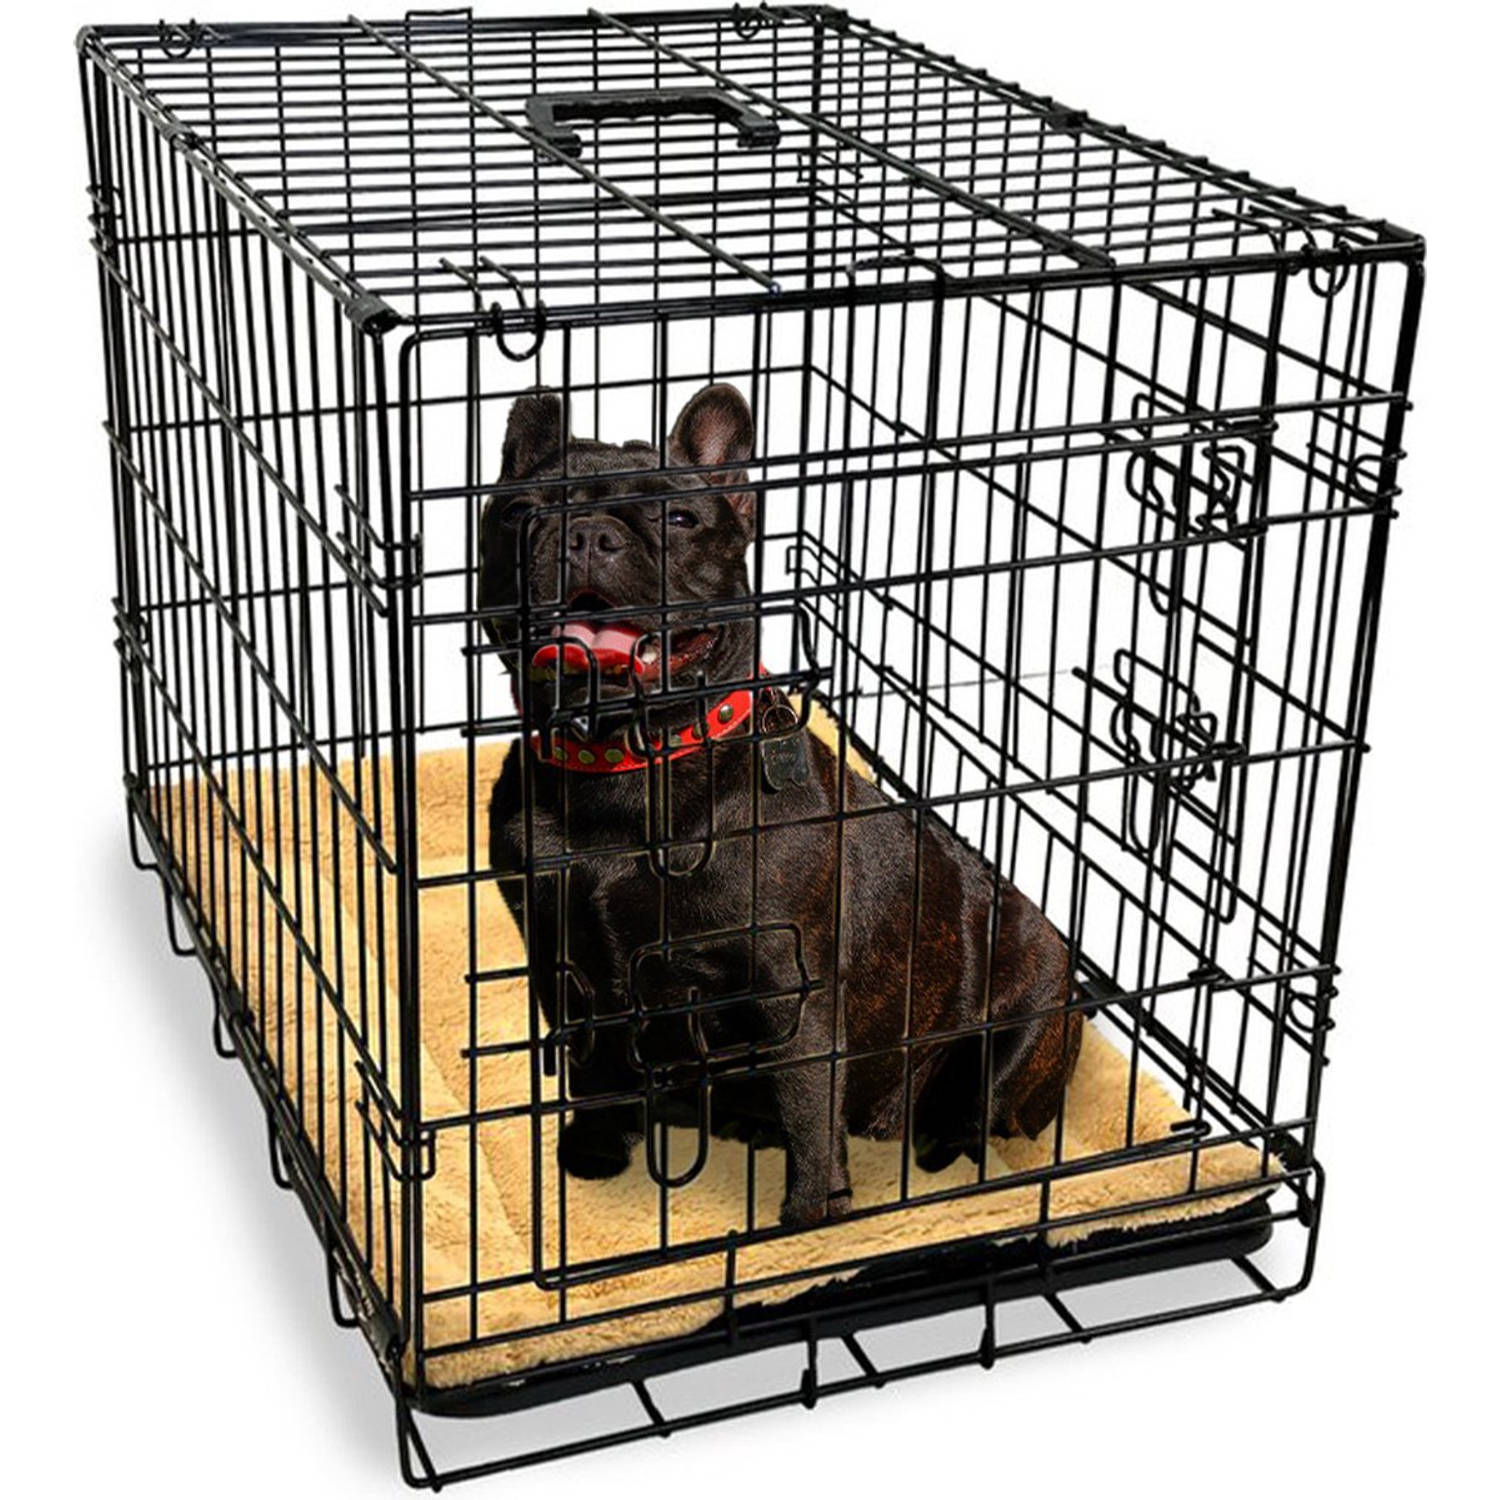 Gopets Hondenbench Opvouwbaar M - Bench - Voor Honden - Incl. Plaid - 2 Deuren - 76 x 48 x 53 cm